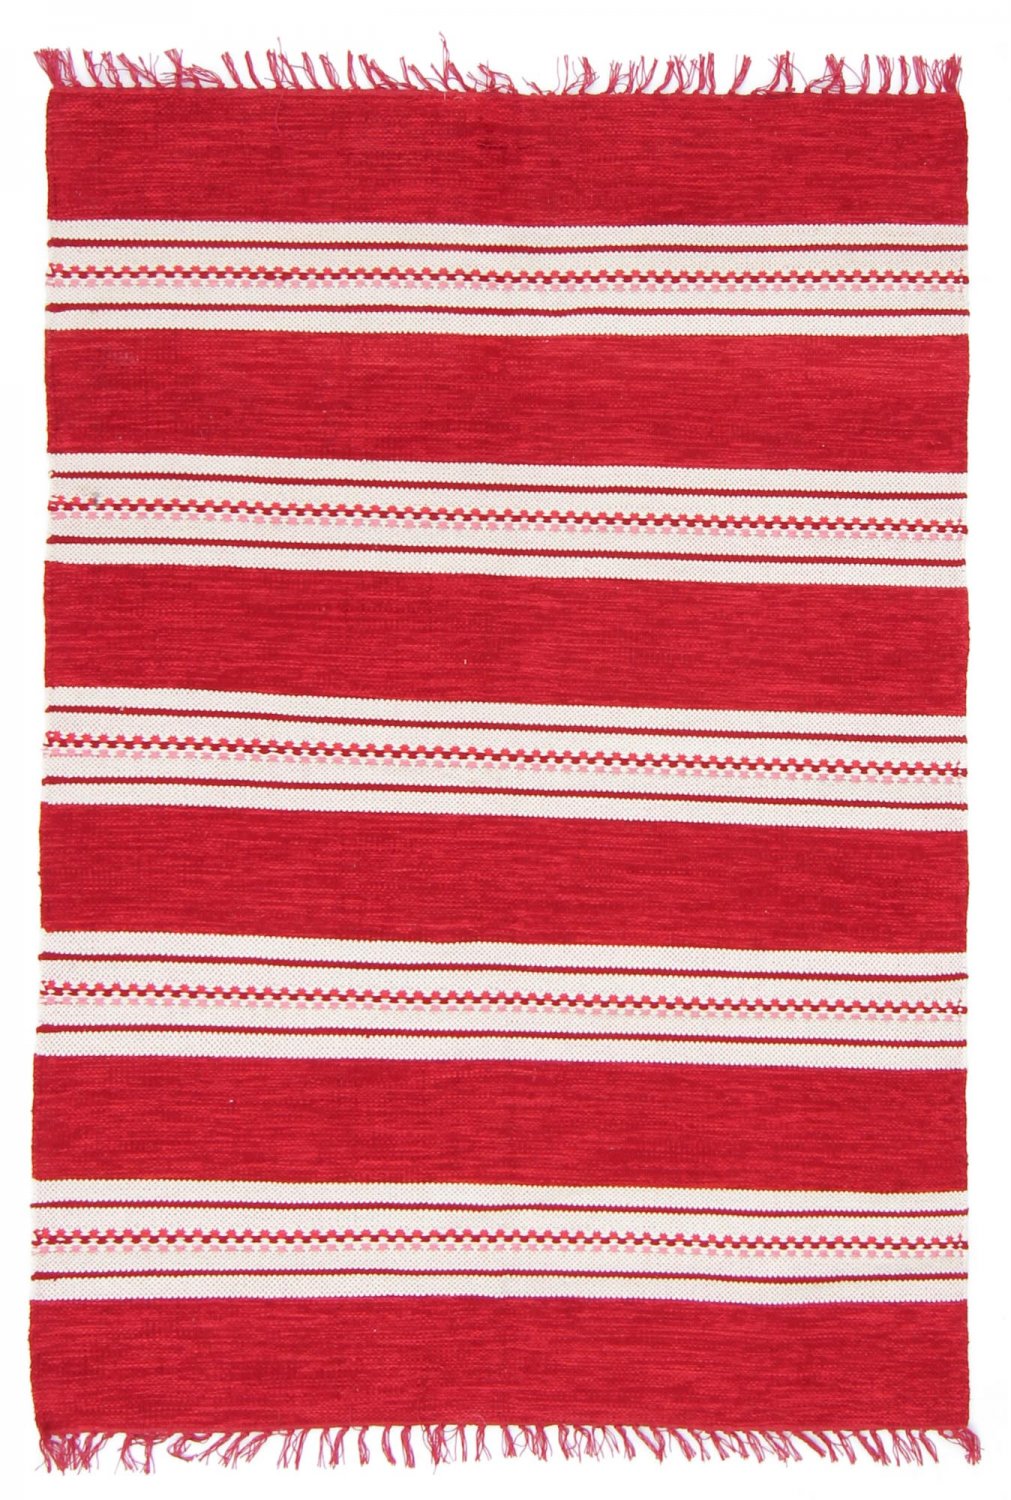 Voddenkleed - Kajsa (rood)